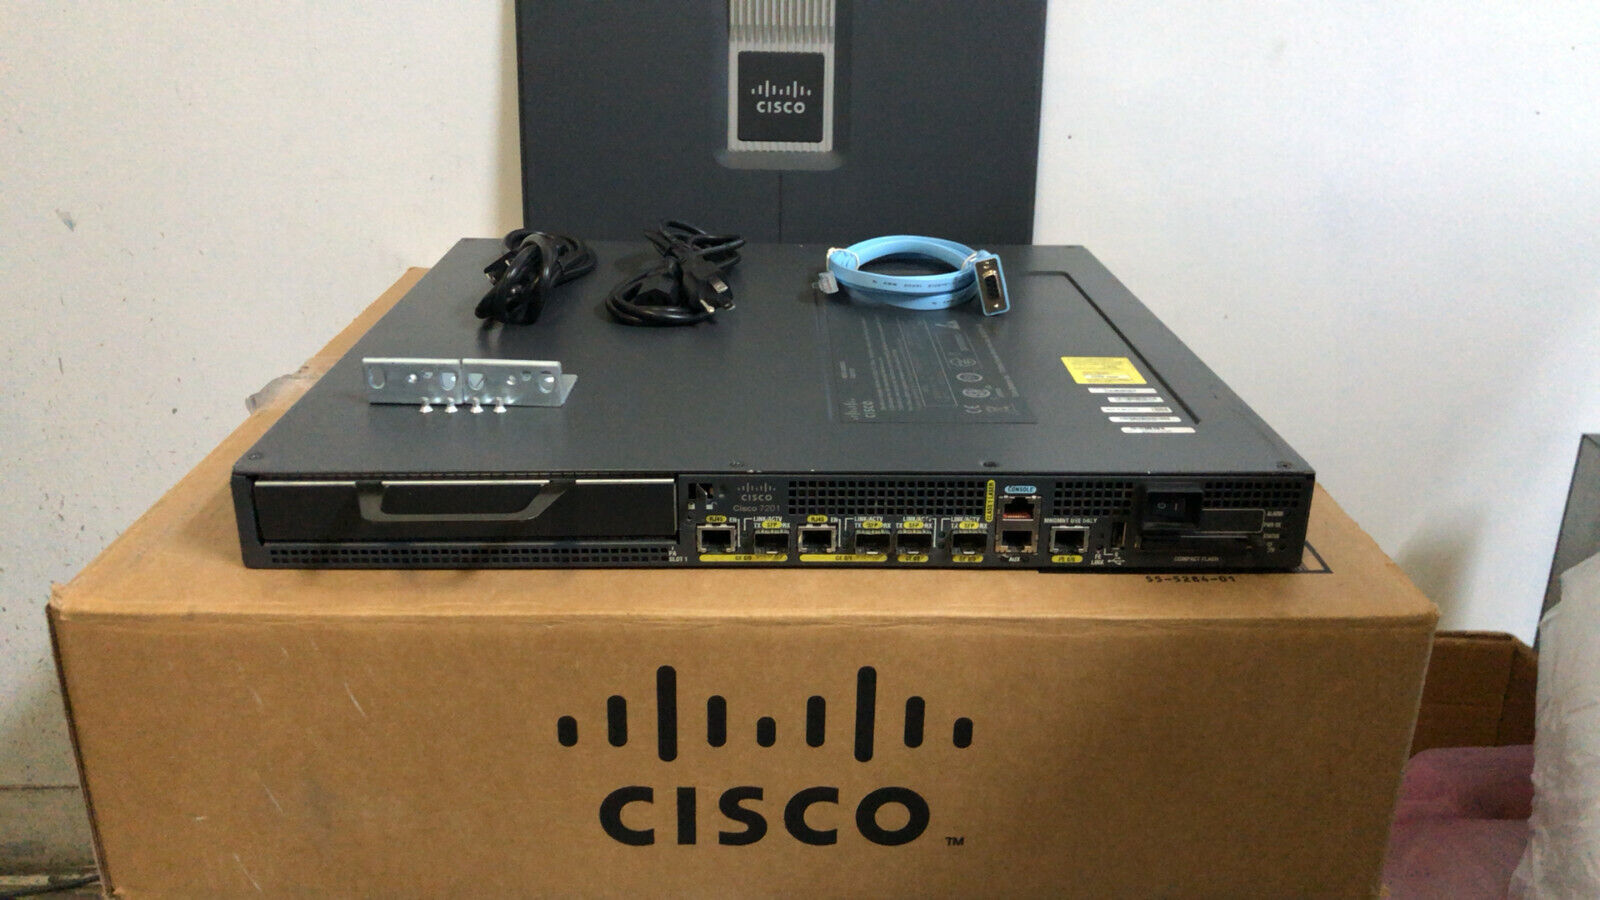 Cisco 7201 4-Port Gigabit Router CISCO7201 Dual AC Pwr NPE-G2 2Gig DRAM ios-15.2